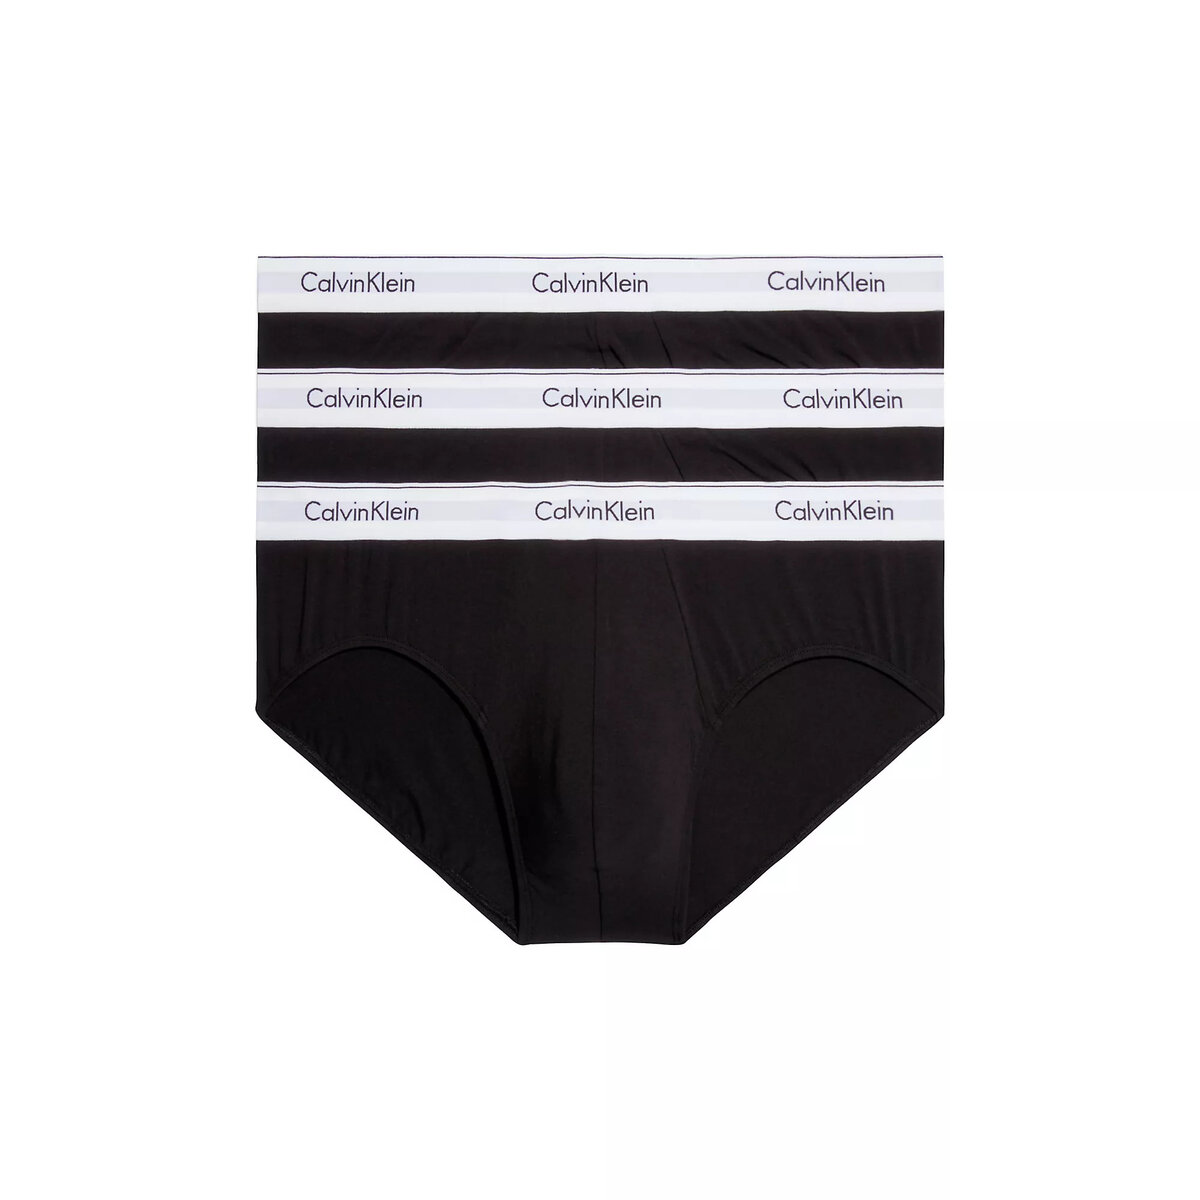 Mužské spodní prádlo KOMFORT 3KS - Calvin Klein, L i652_000NB2379A001003